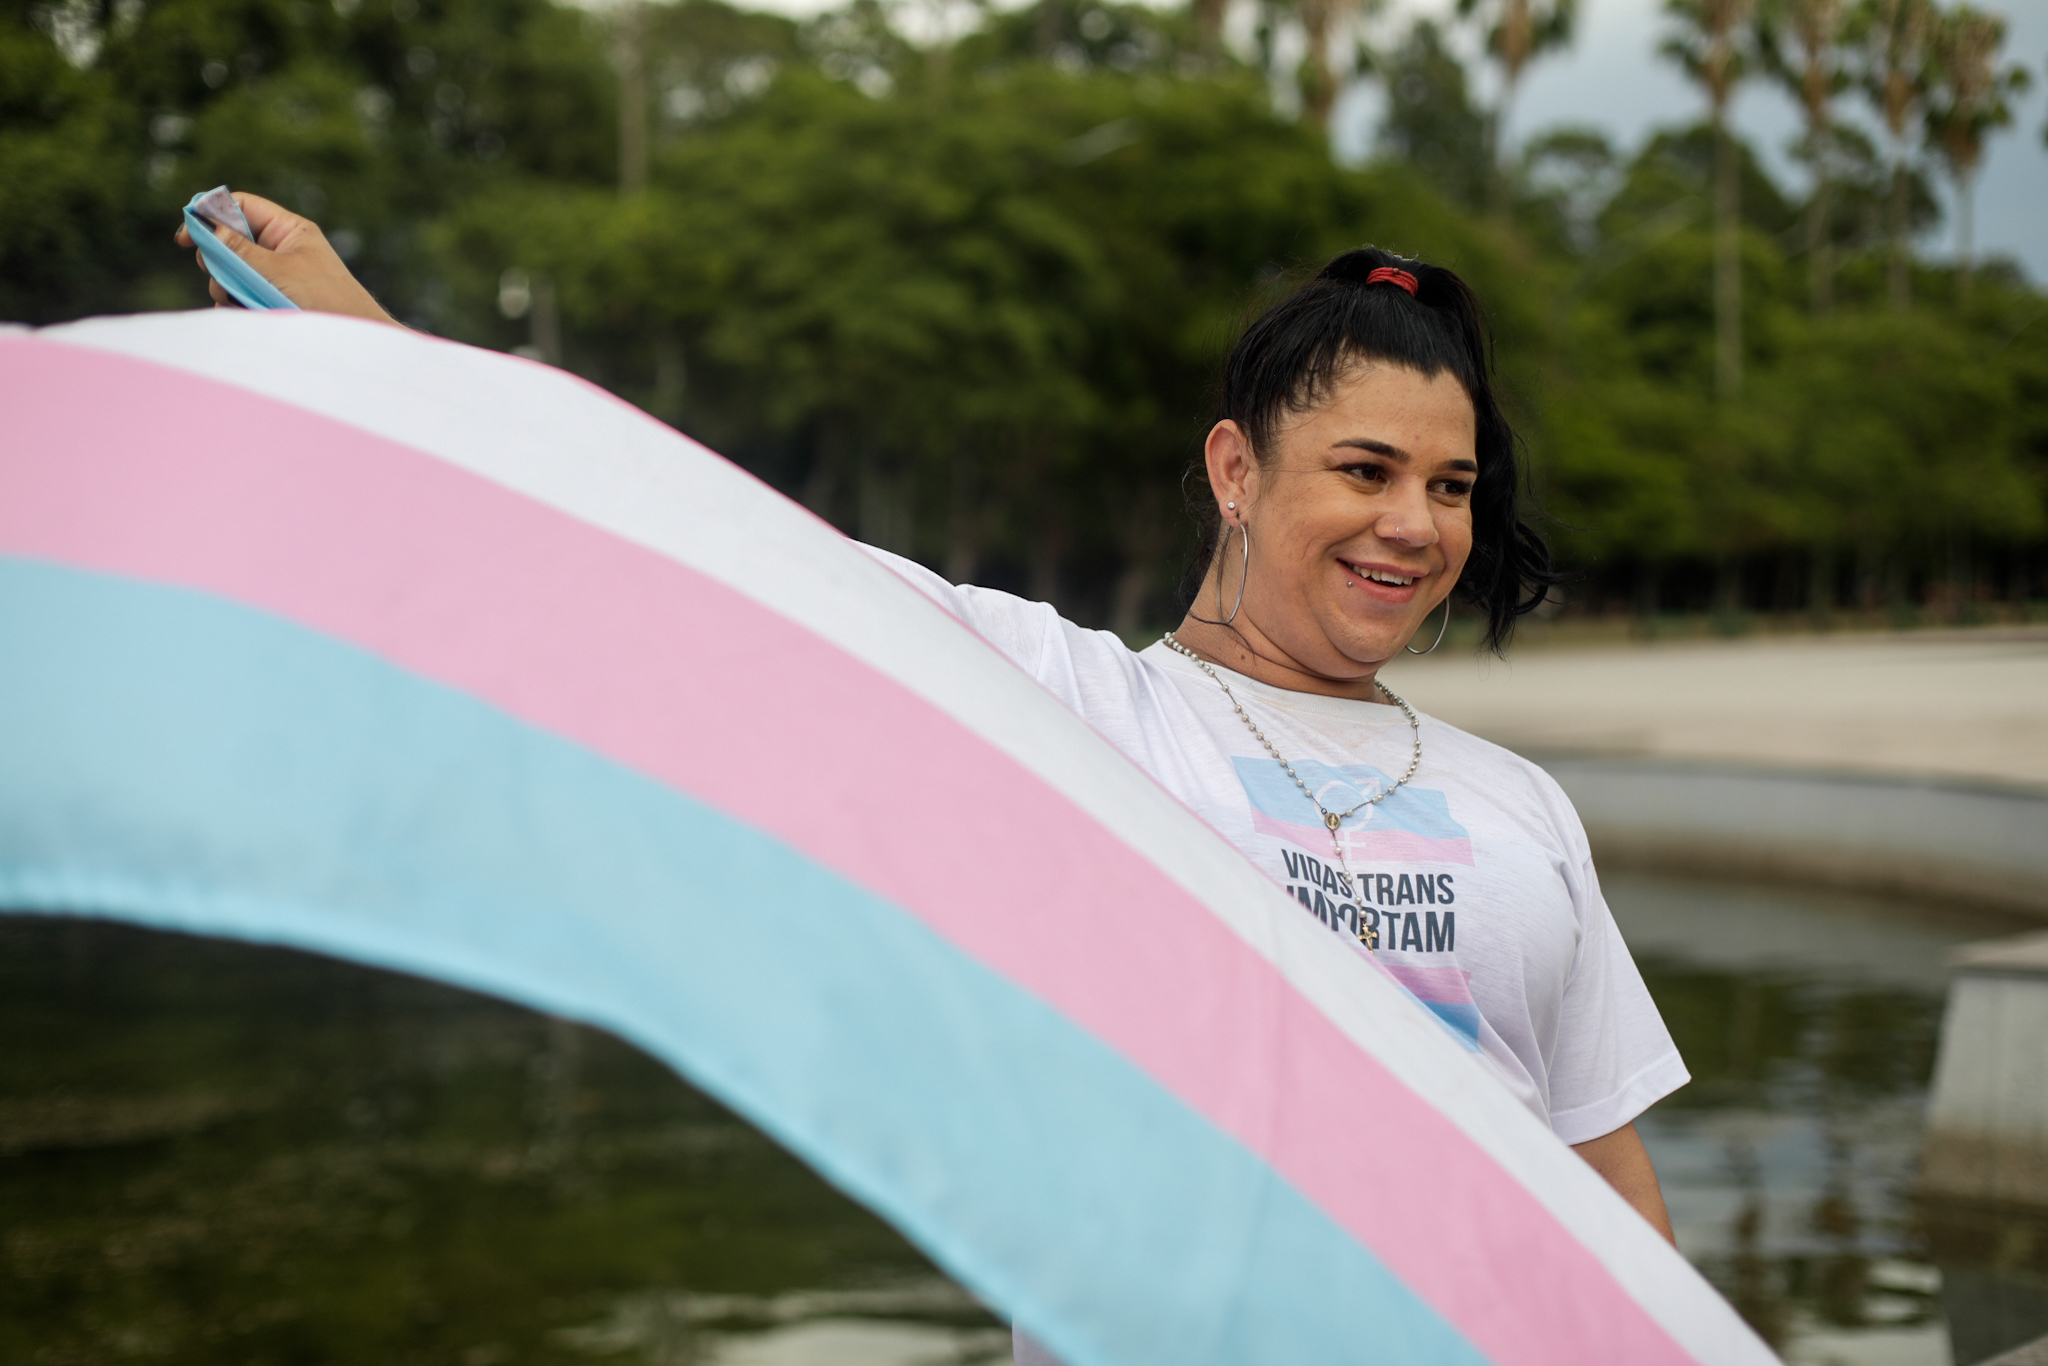 Transexual com a bandeira azul claro, rosa e branca que identifica este grupo de pessoas